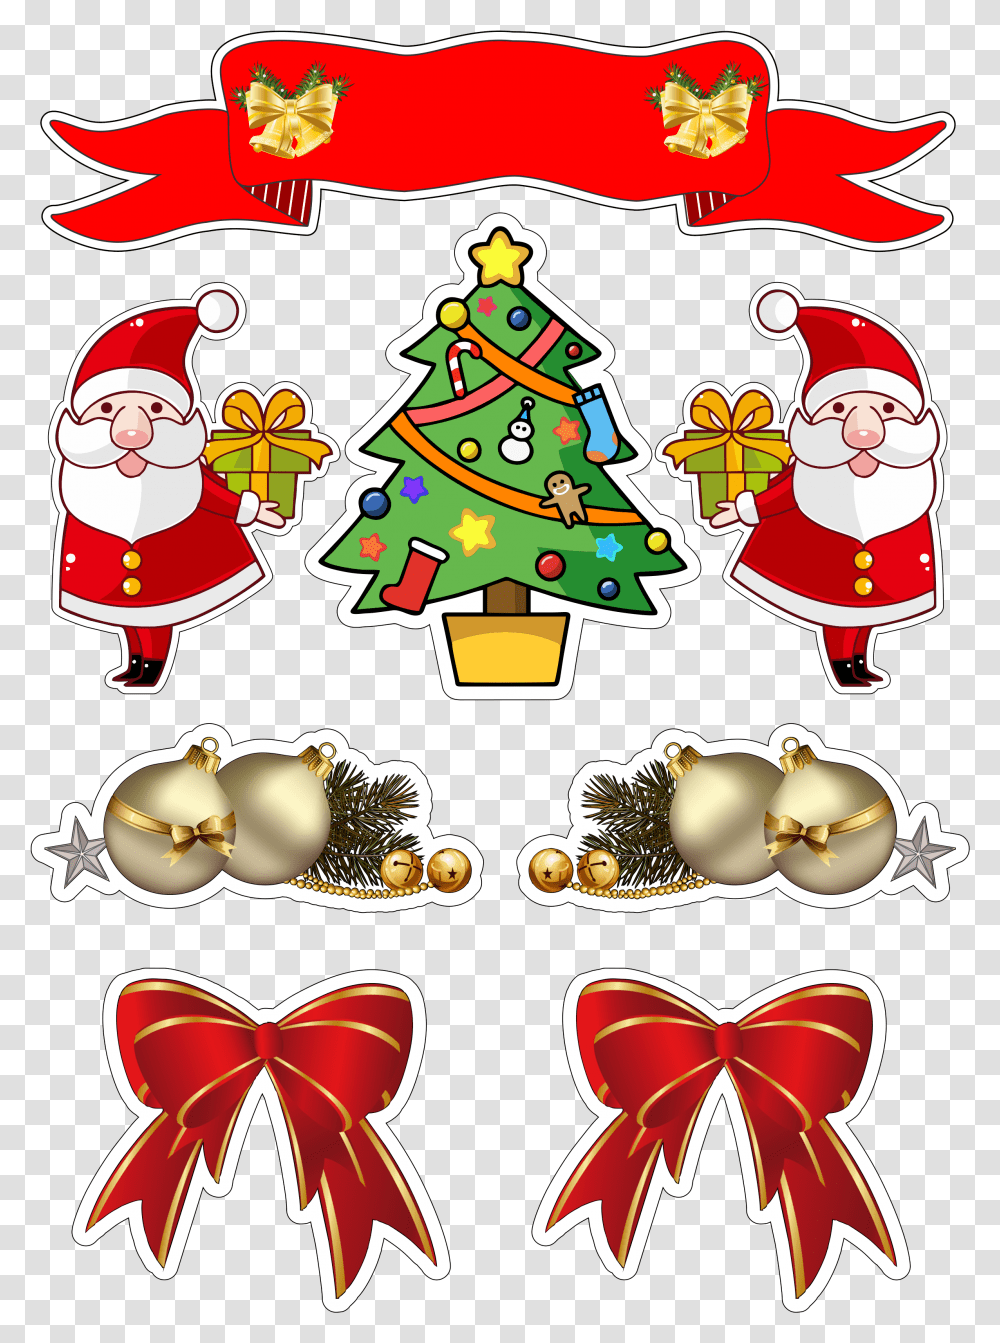 Topo De Bolo De Ceia De Natal, Tree, Plant, Ornament, Christmas Tree Transparent Png